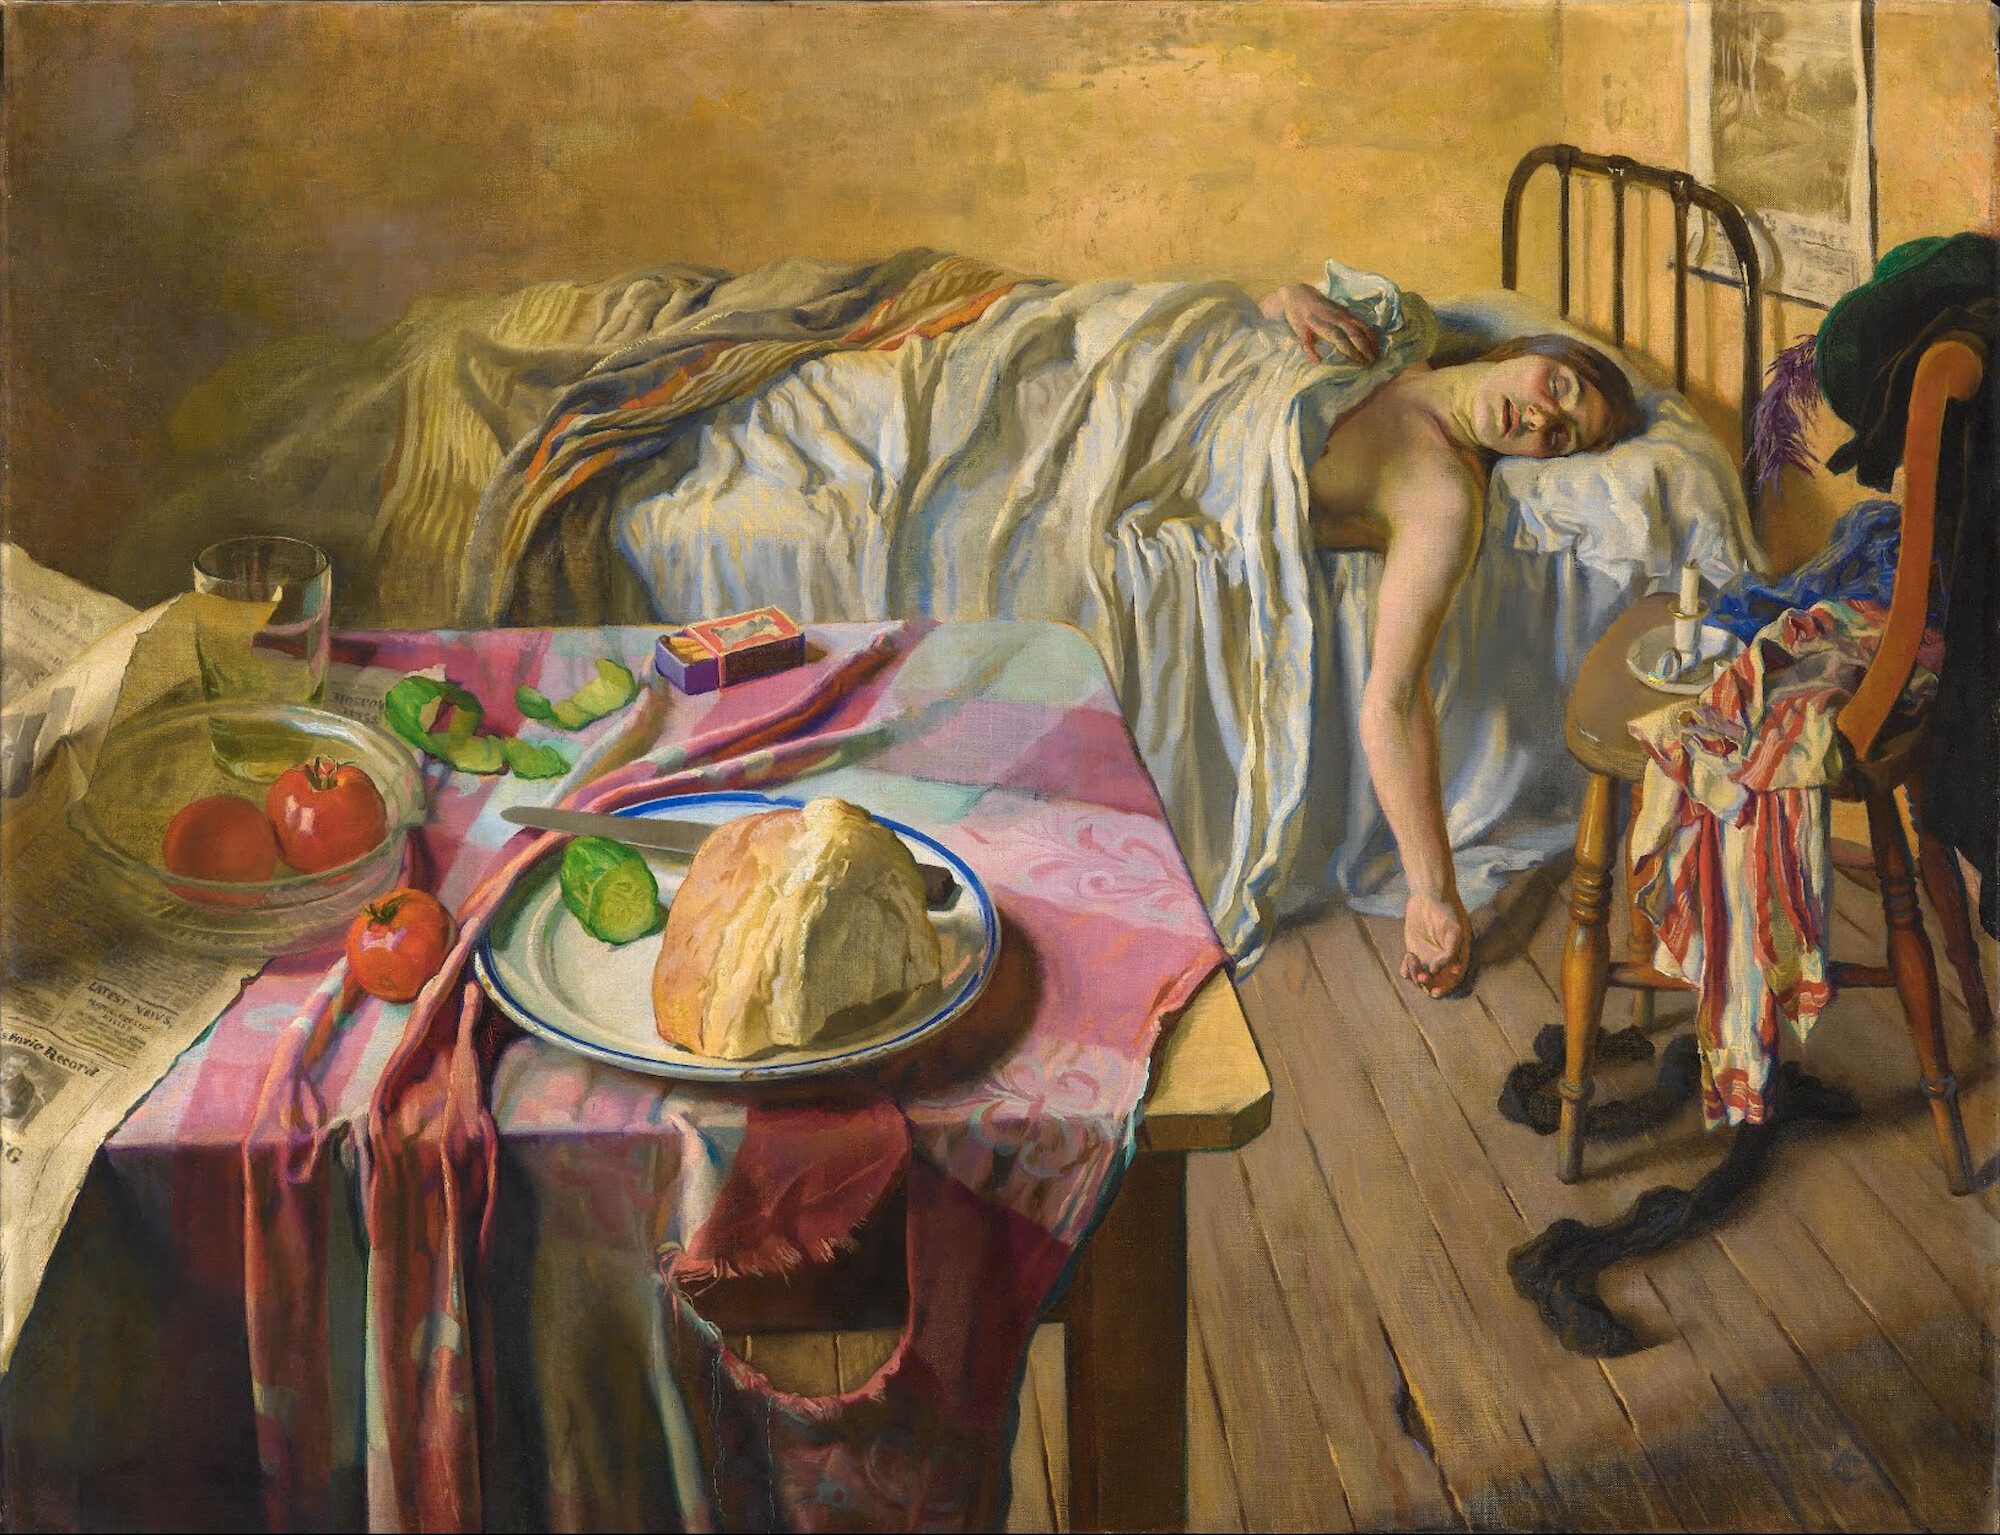 早上 by Isabel Codrington - 1934 年 - 87 x 112.5 cm 